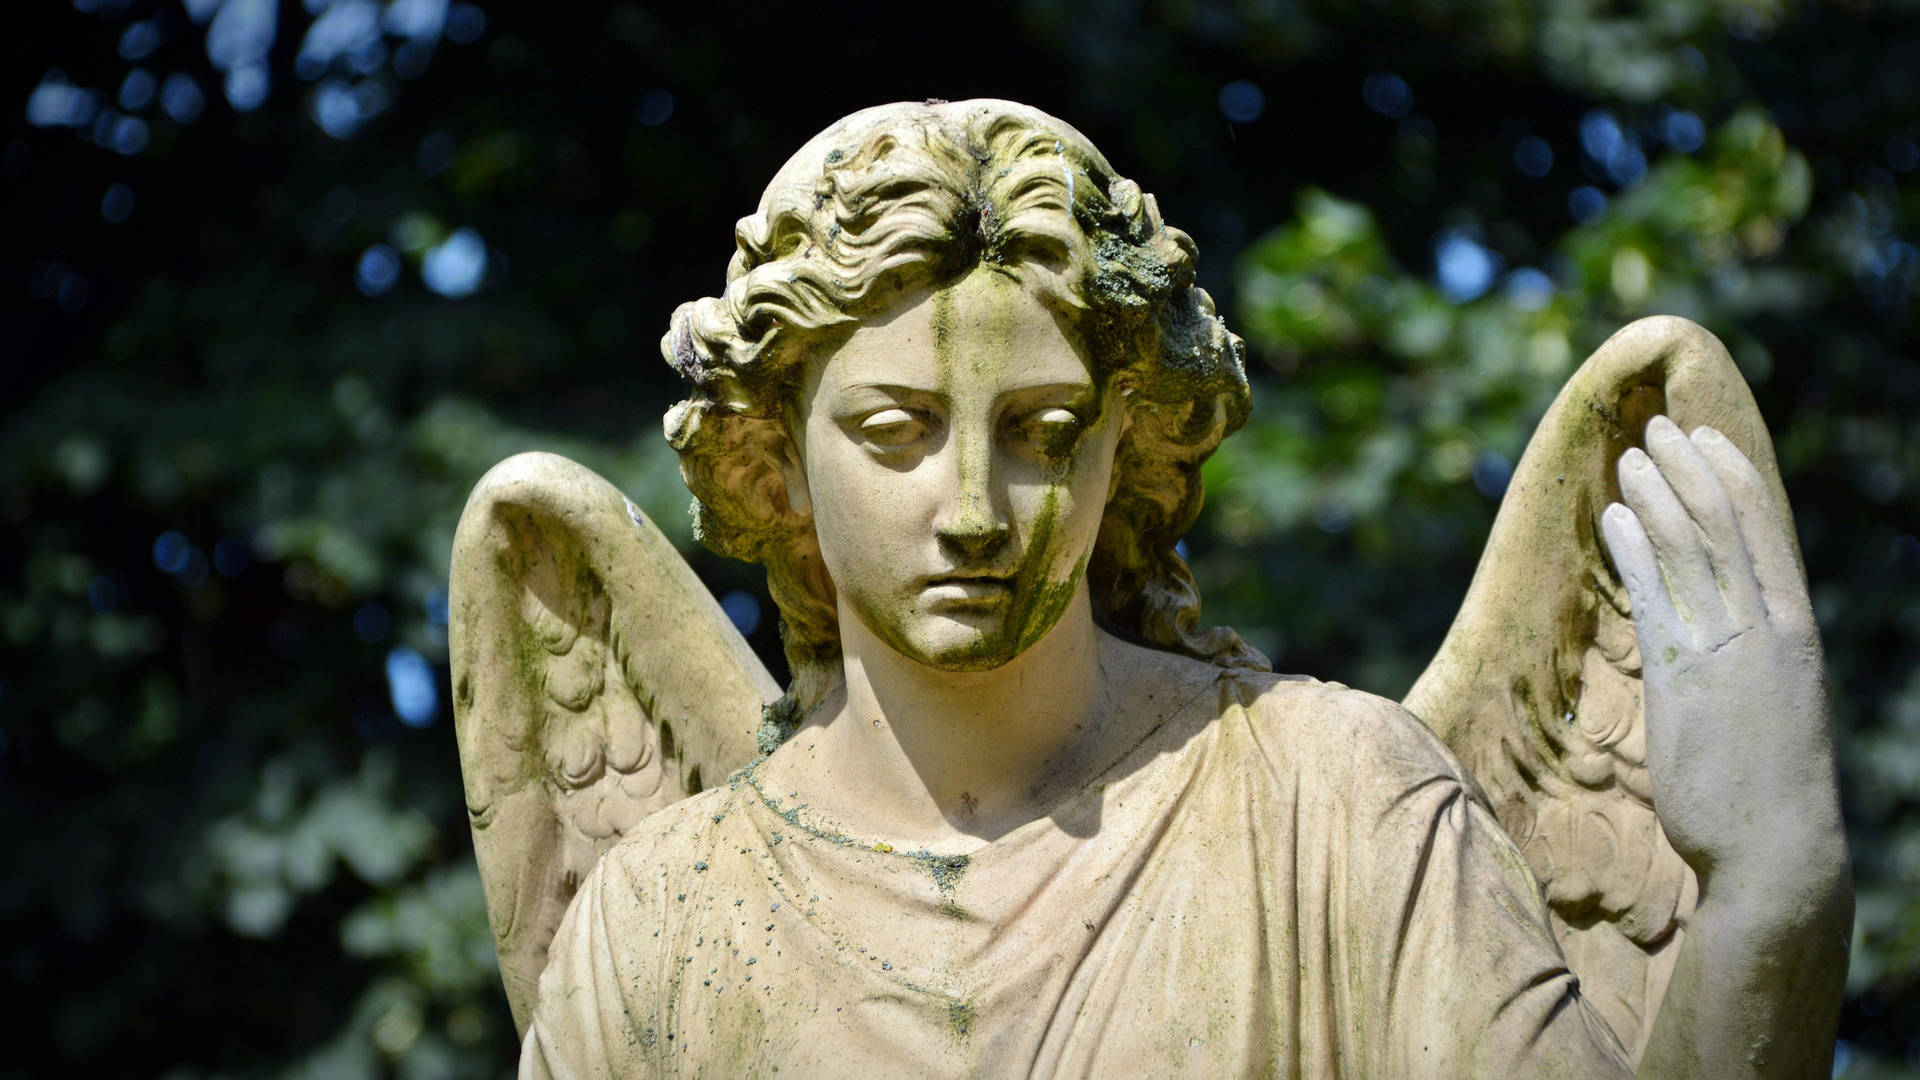 Garden Angel Sculpture Background